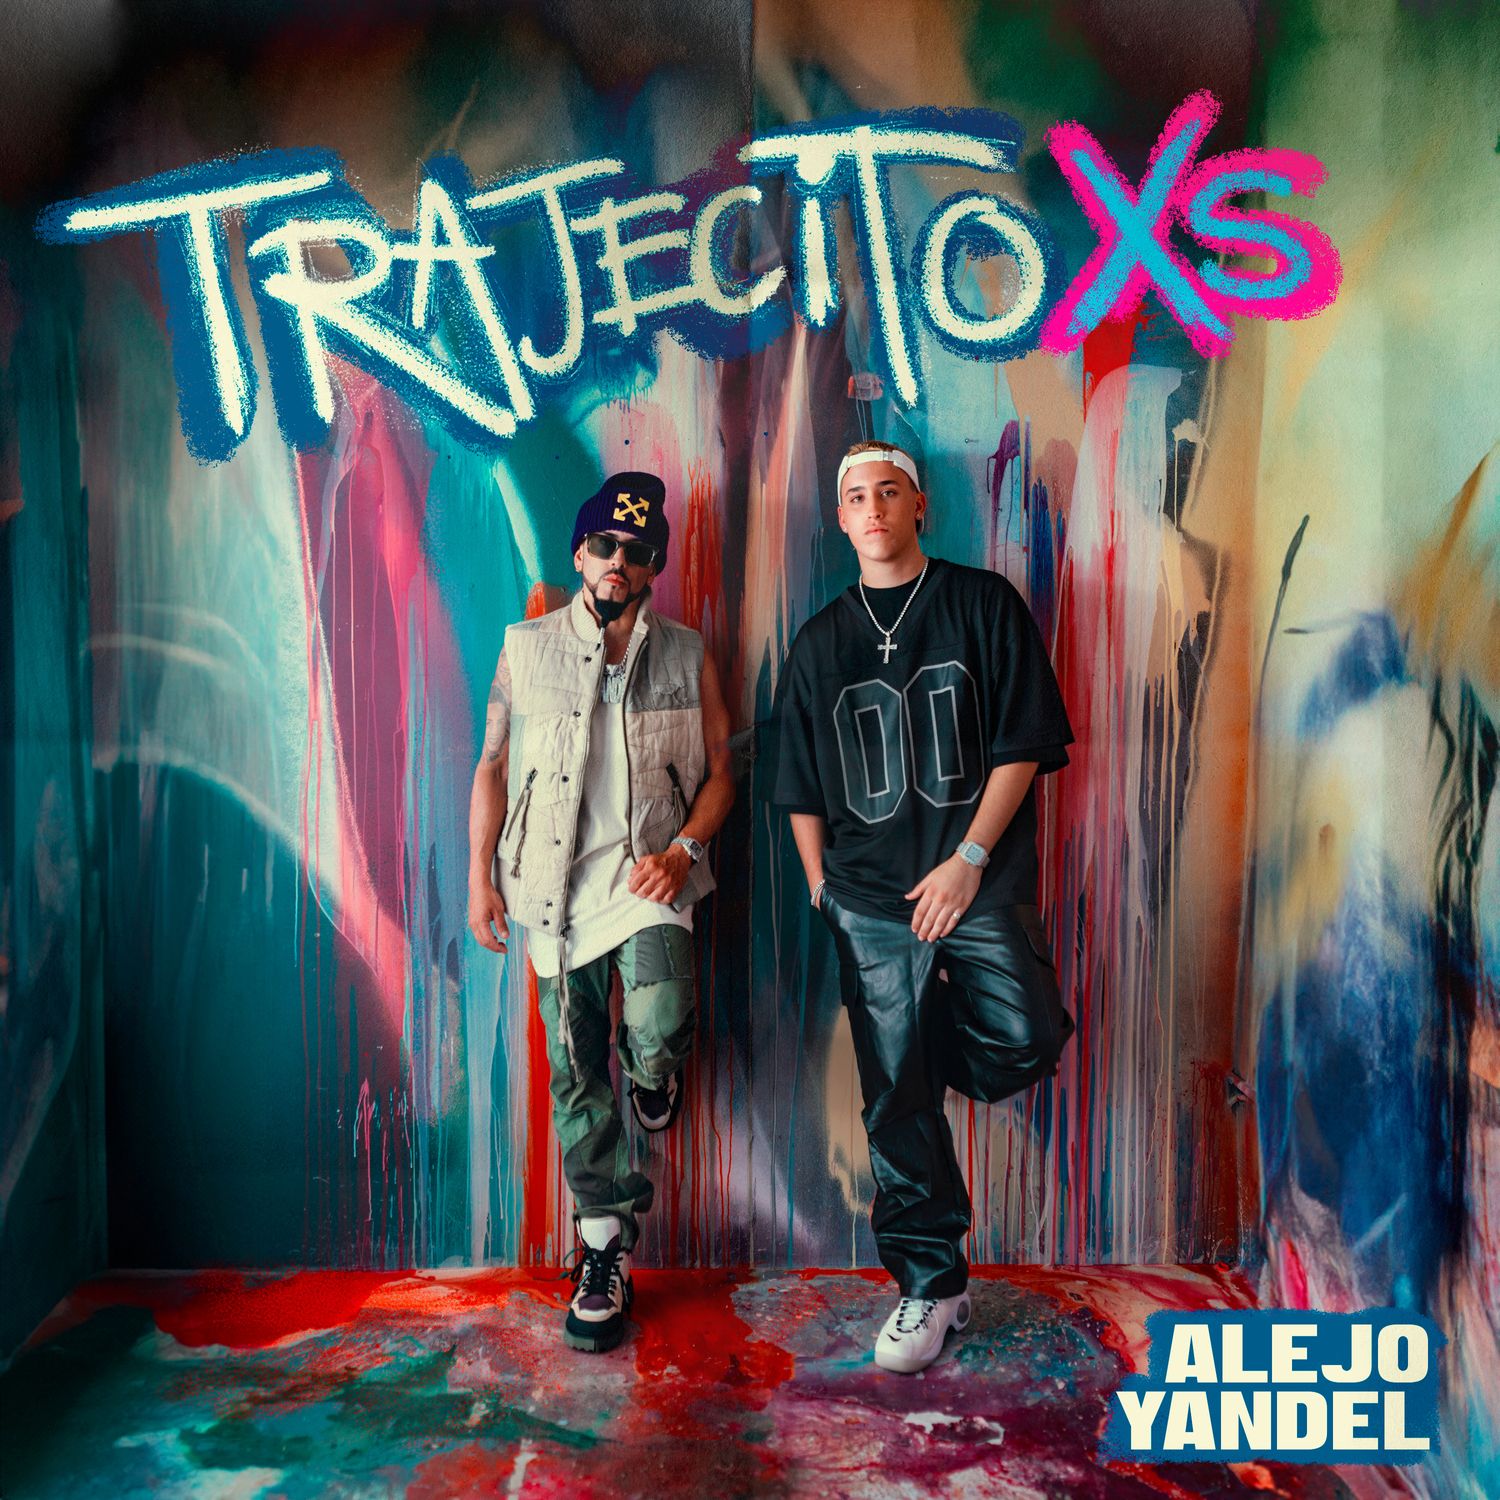 MP3: Alejo Ft. Yandel – Trajecito XS